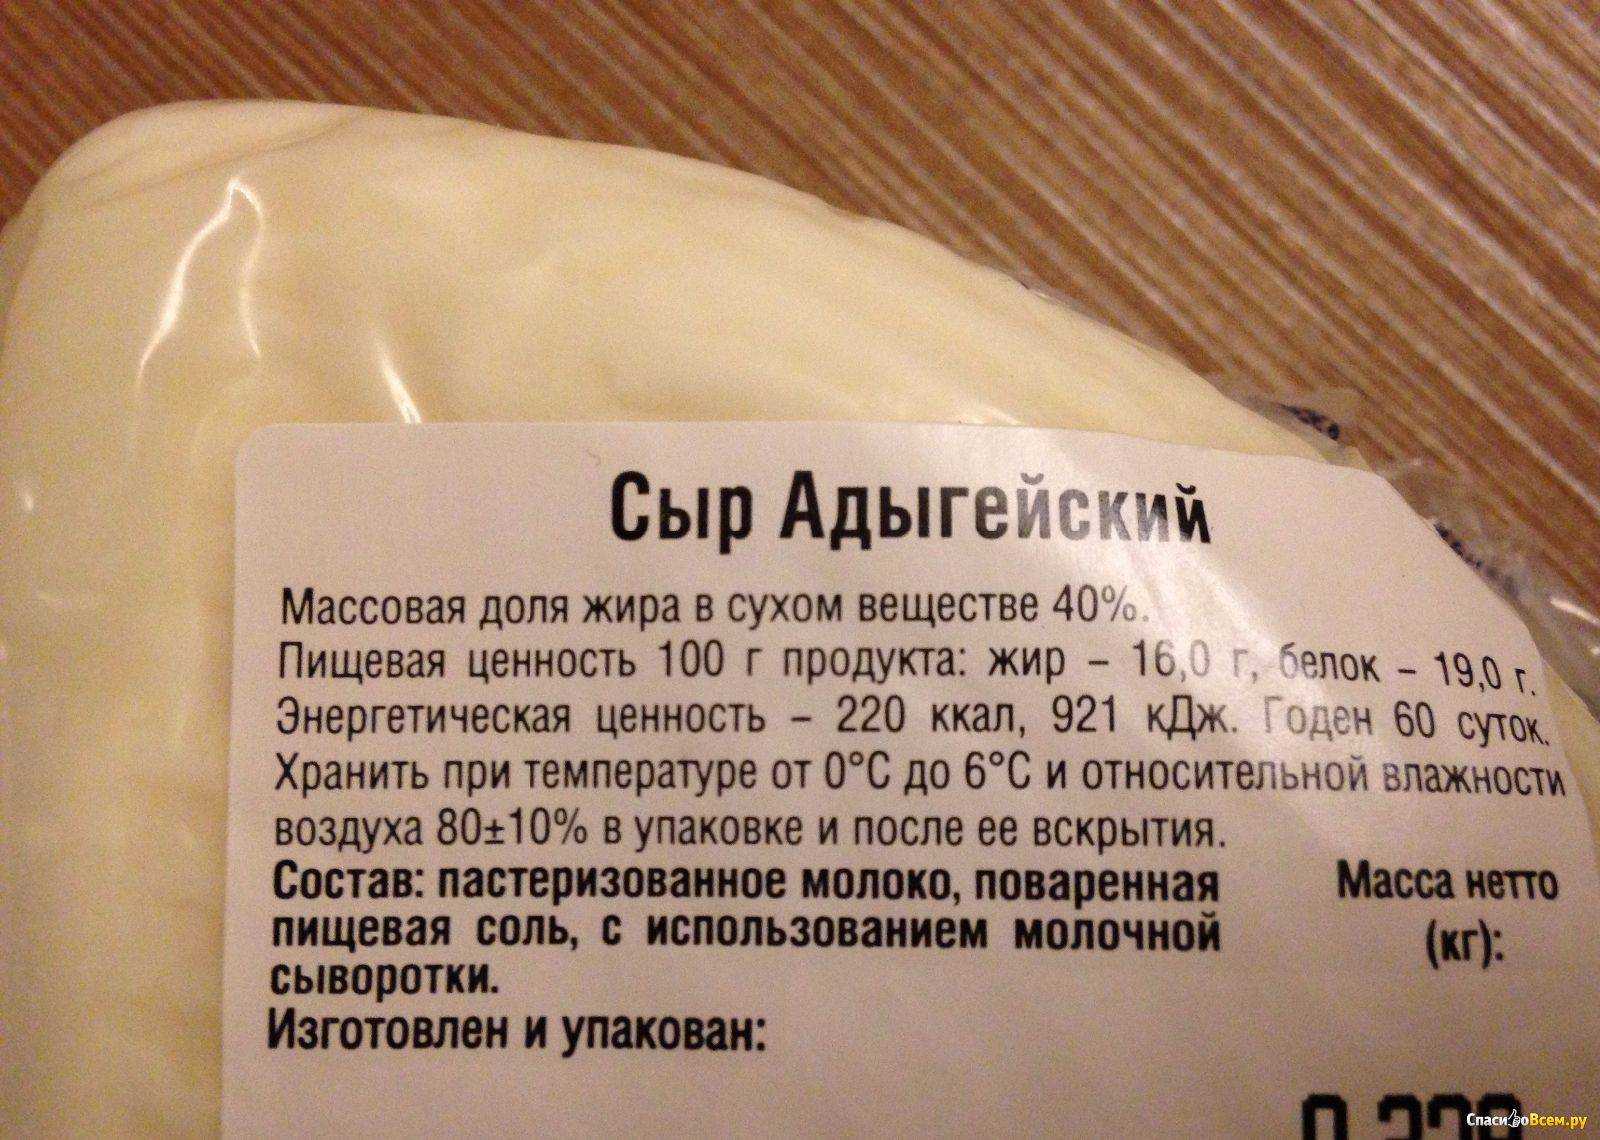 Сыр калорийность на 100 грамм бжу. Адыгейский сыр калорийность. Адыгейский сыр состав. Состав адыгейского сыра. Адыгейский сыр жирность.